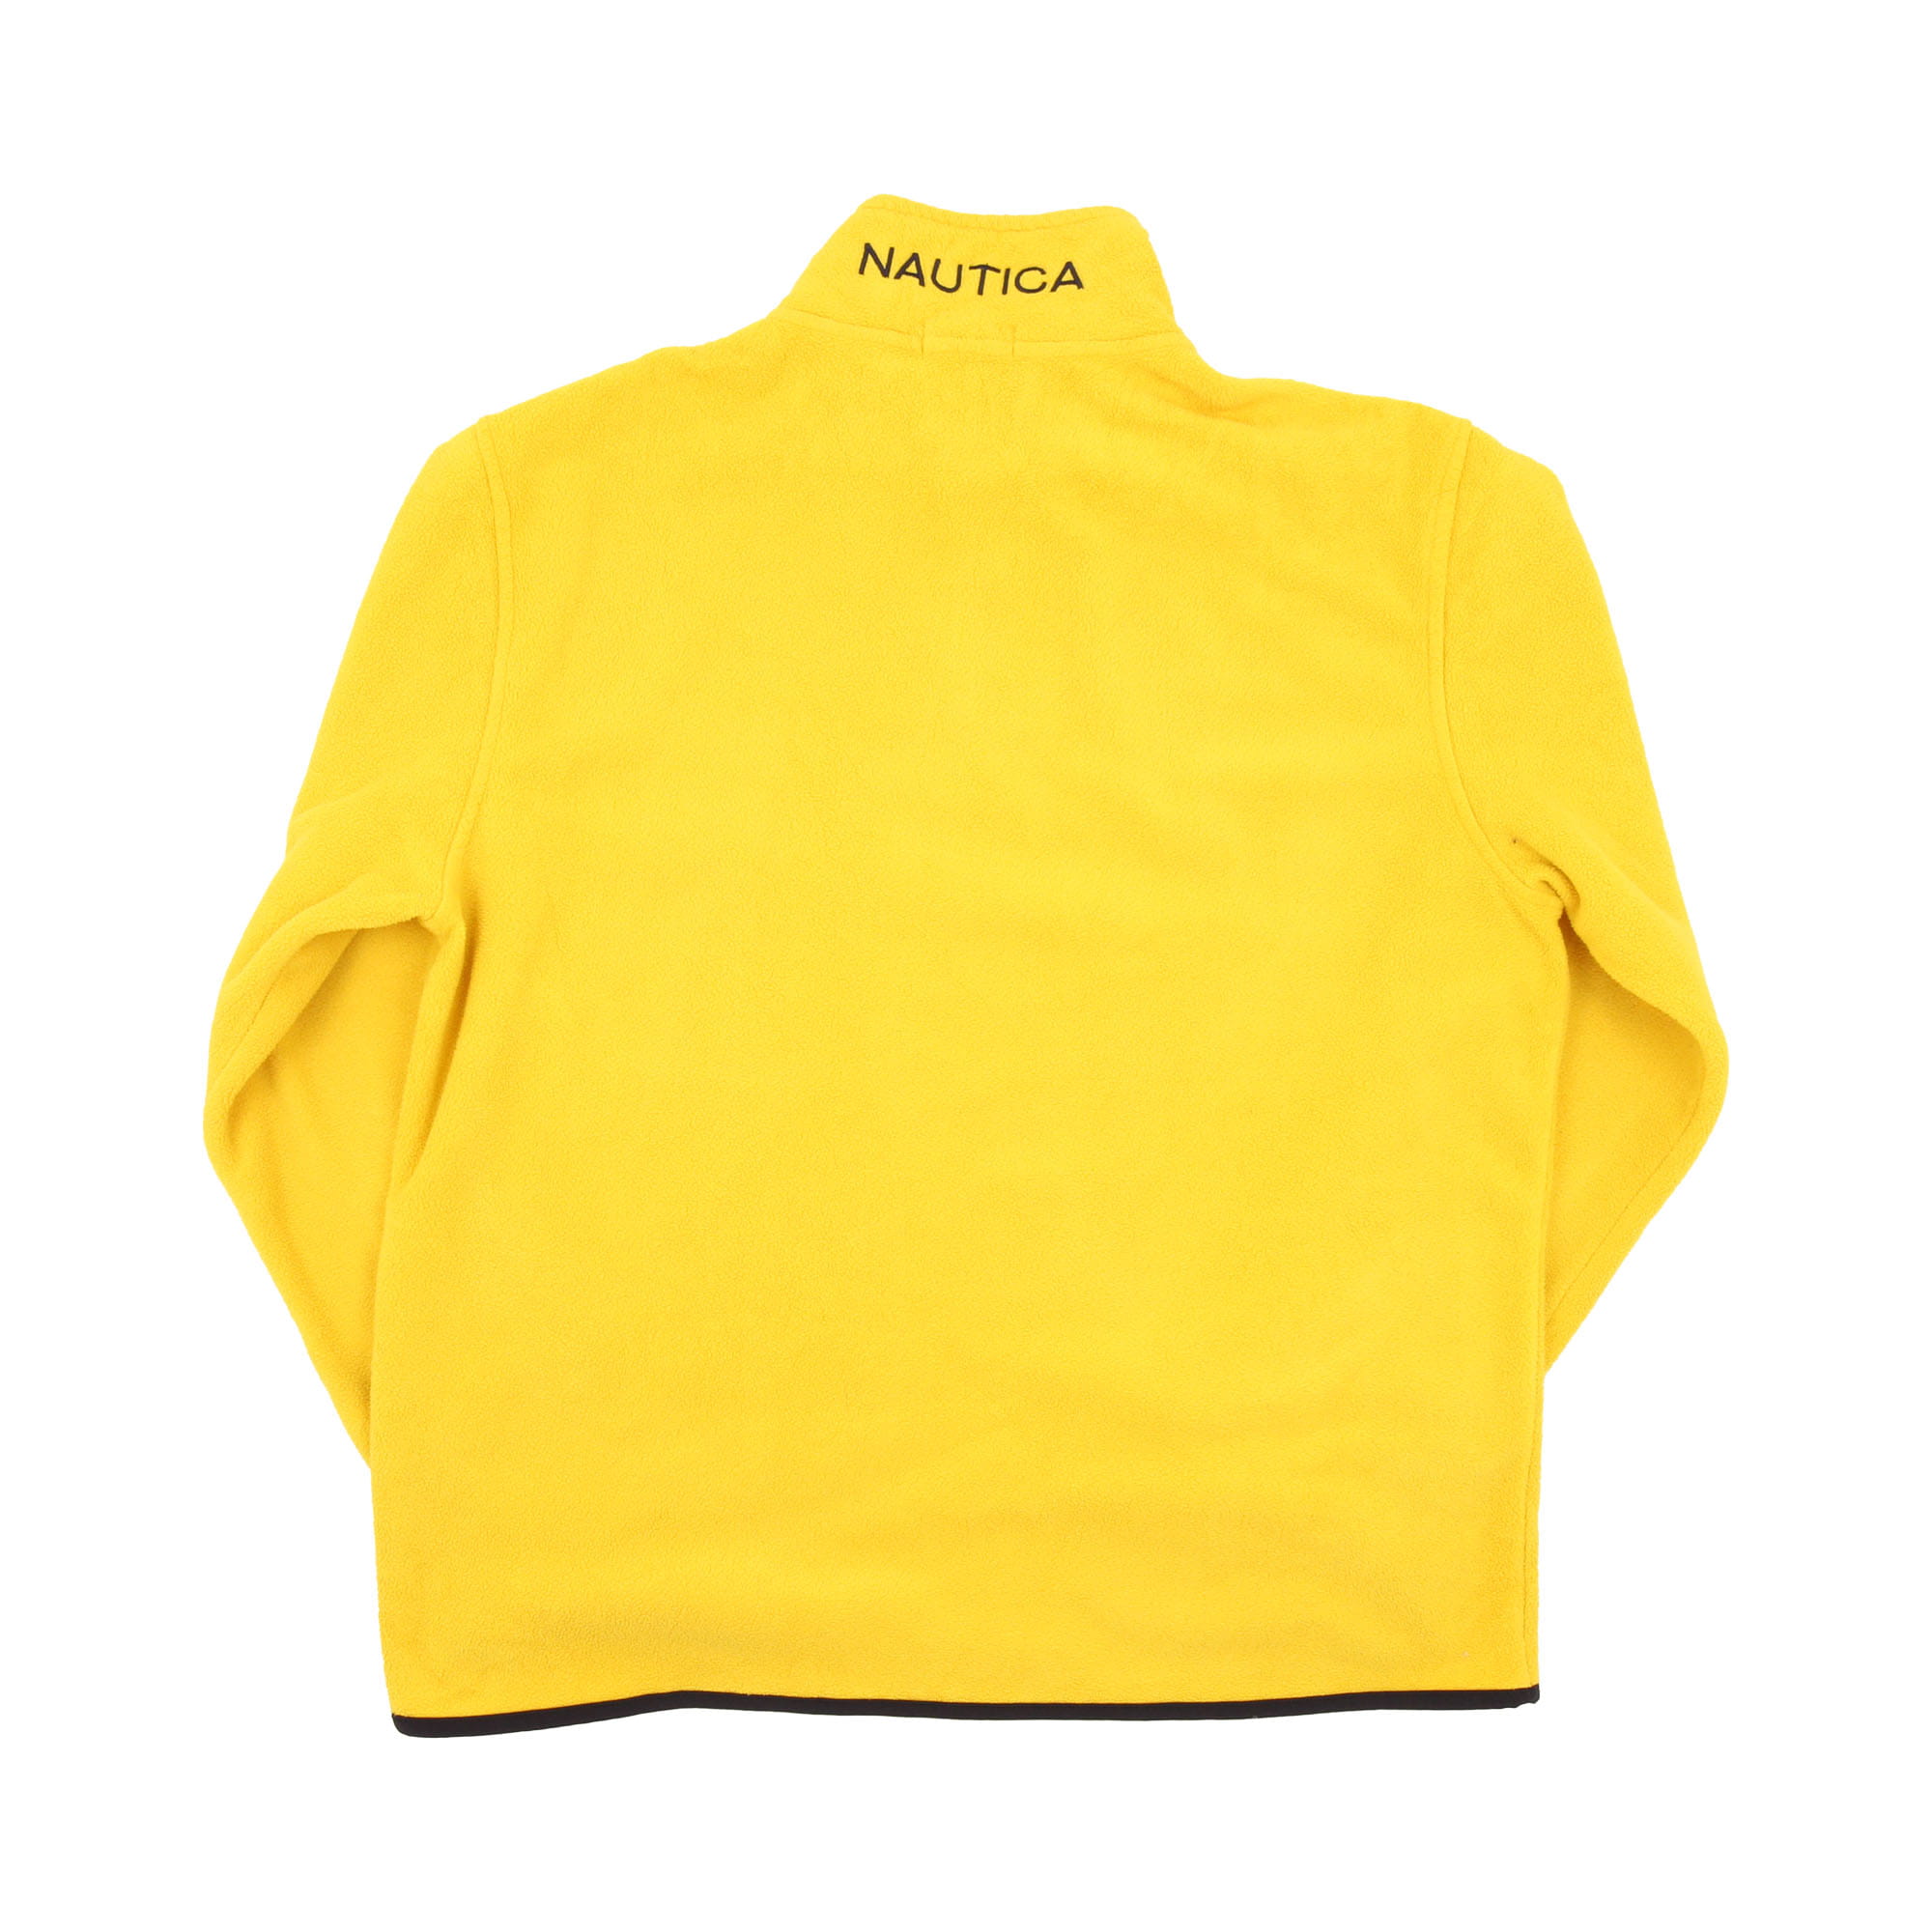 Nautica Fleece Yellow -  XL